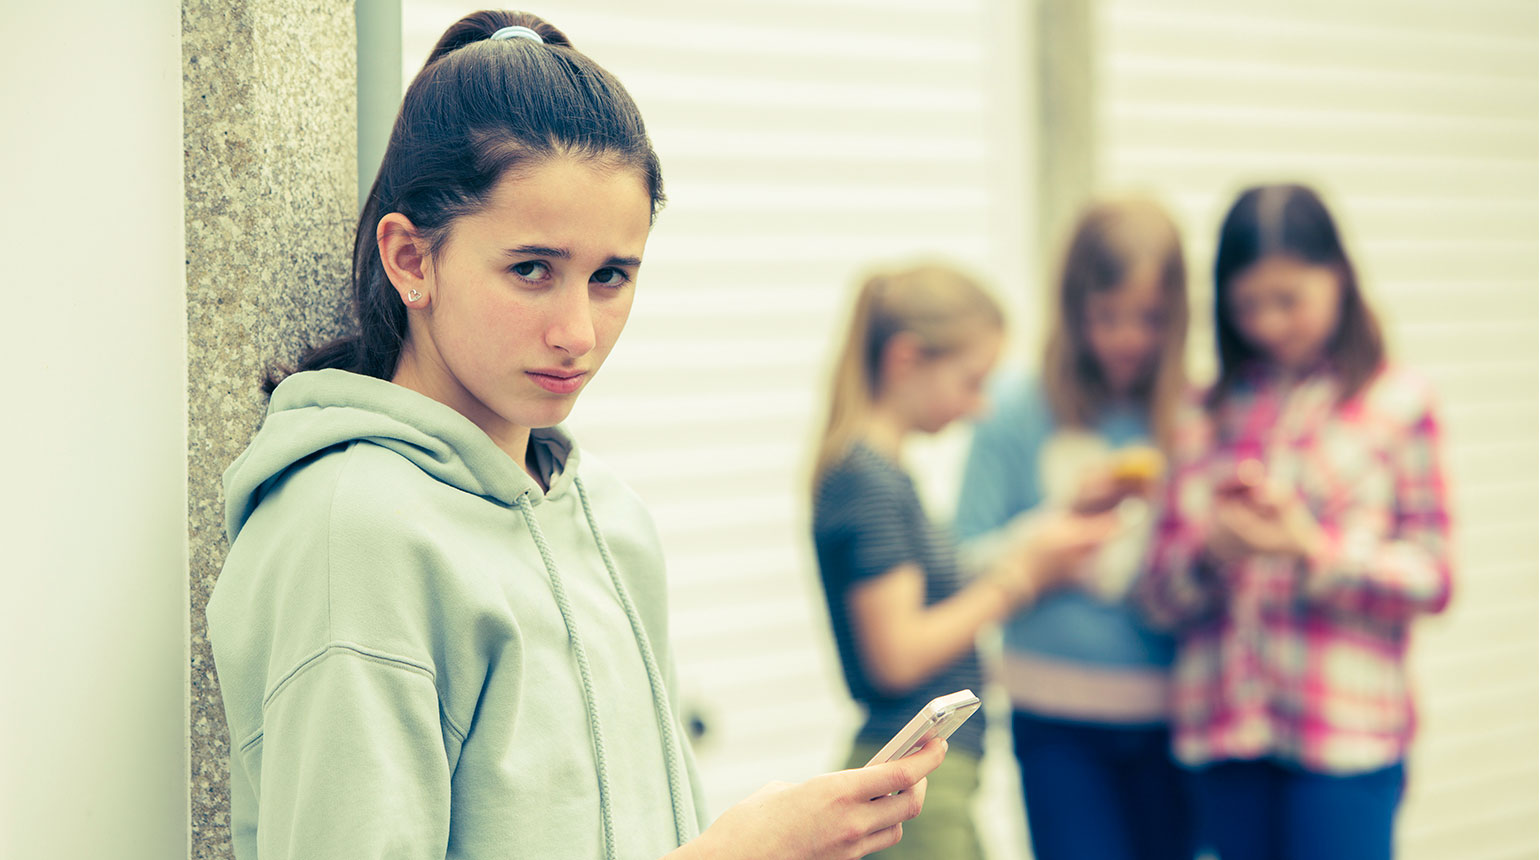 Eine Jugendliche hält ein Smartphone; sie sieht traurig und ängstlich aus.